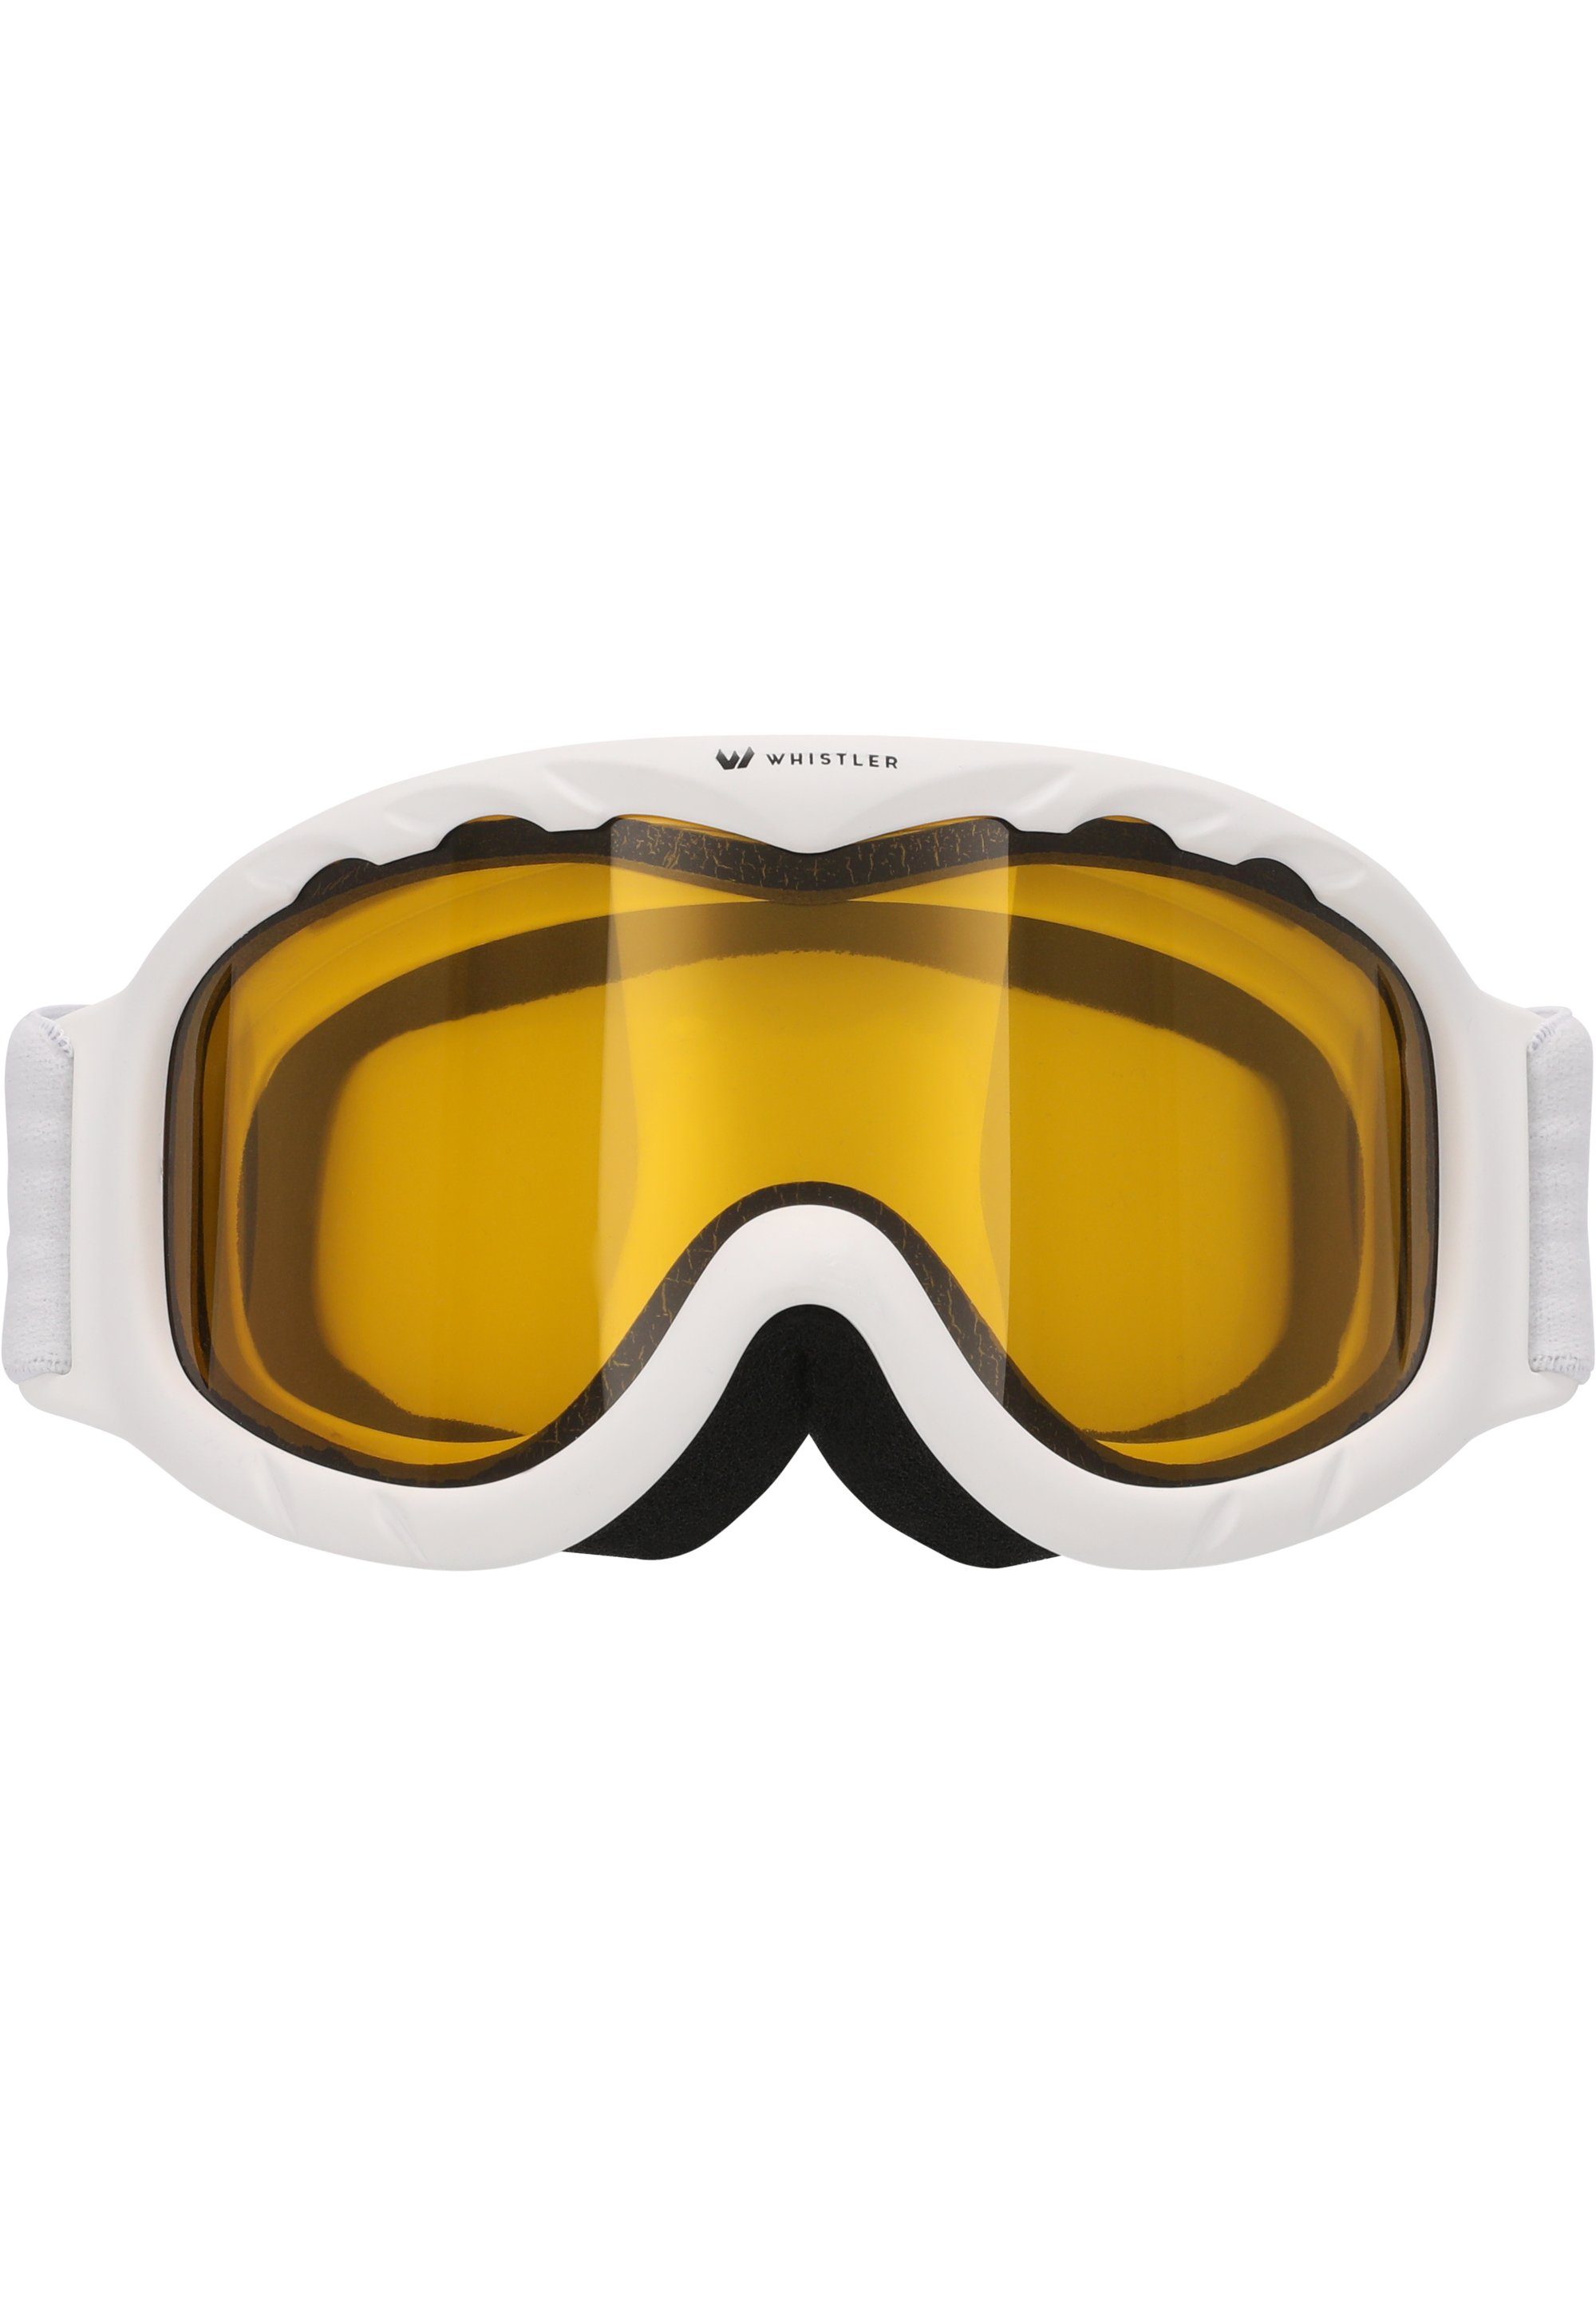 äußern WHISTLER Skibrille WS300 Jr. mit weiß Goggle, Ski Anti-Fog-Beschichtung